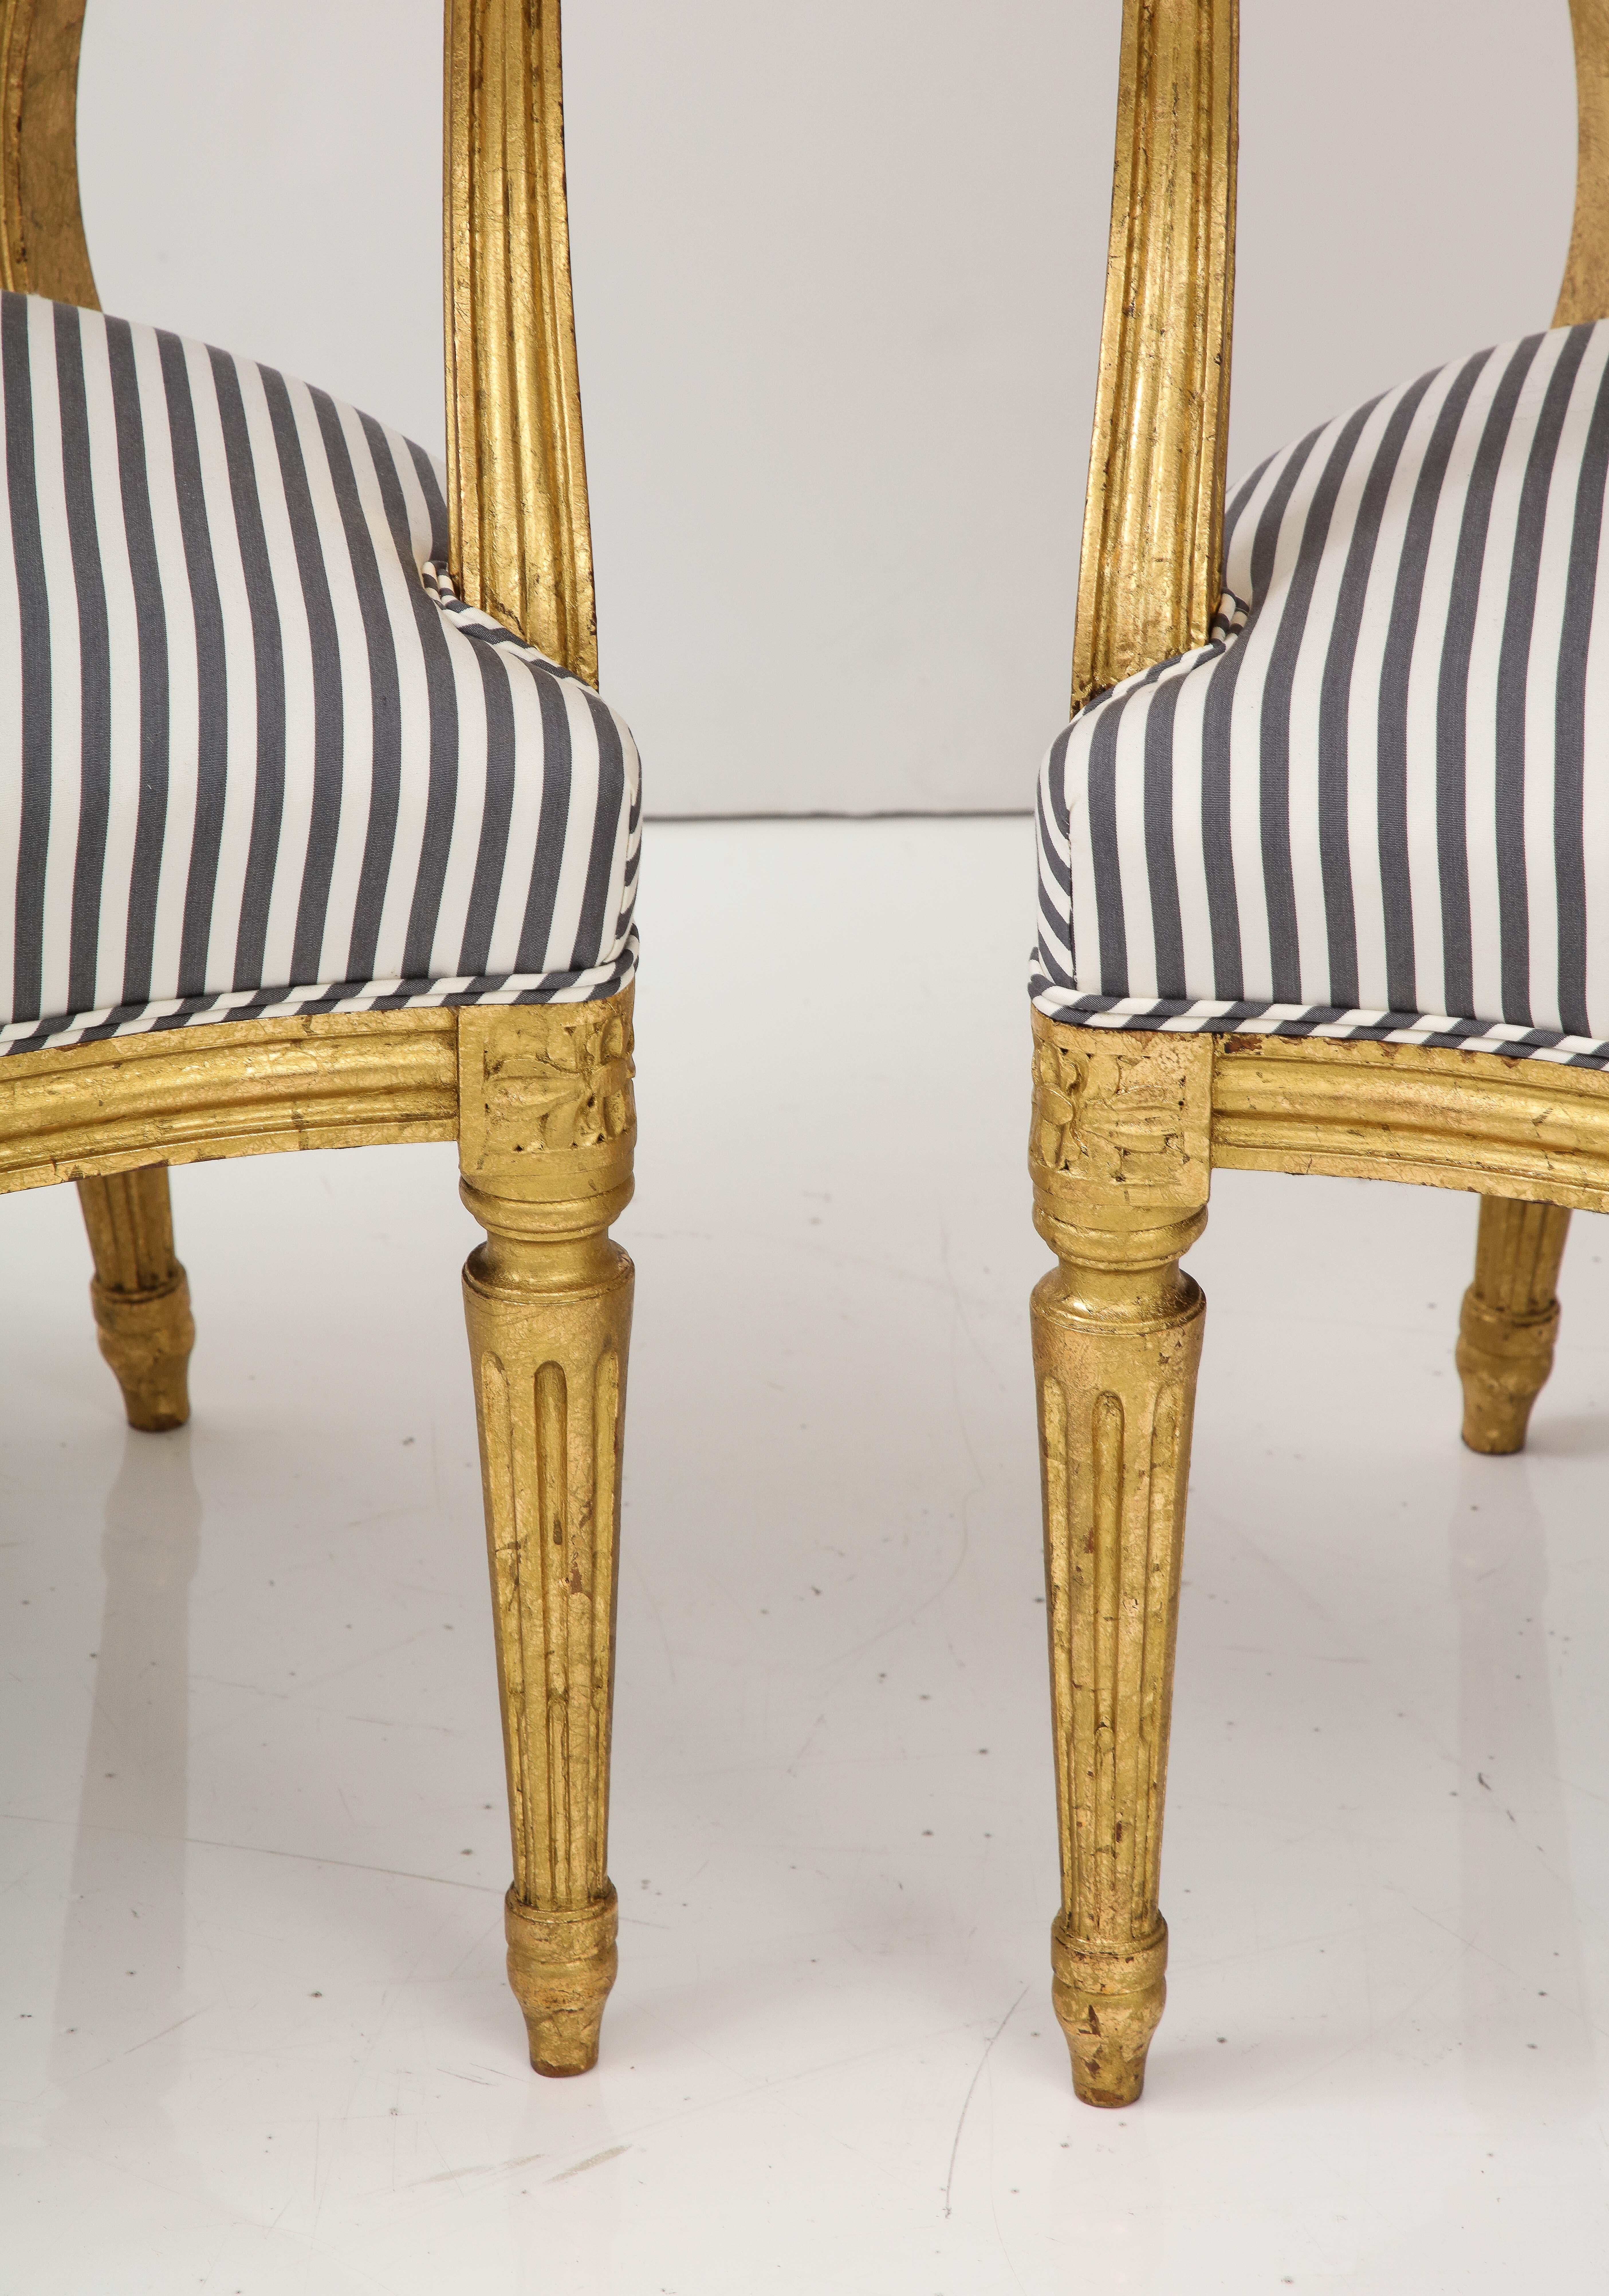 L'ancien rencontre le nouveau dans cette paire de fauteuils de style Louis XVI en finition dorée....  Nous aimons l'élégance sobre du style Louis XVI, et ces chaises présentent de nombreux détails caractéristiques de ce style : un dossier ovale, de